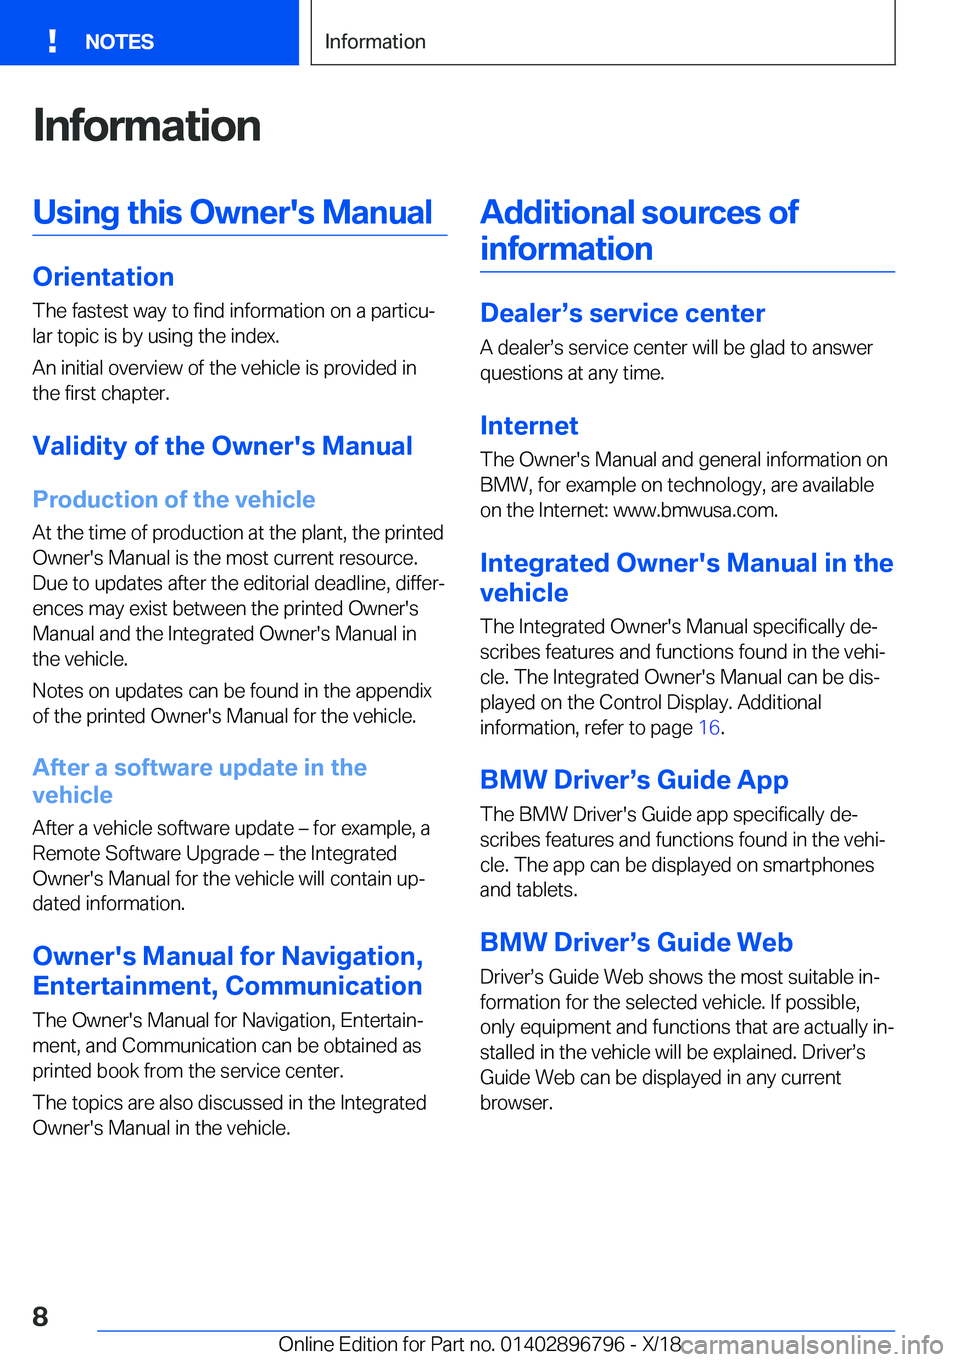 BMW X7 2019  Owners Manual �I�n�f�o�r�m�a�t�i�o�n�U�s�i�n�g��t�h�i�s��O�w�n�e�r�'�s��M�a�n�u�a�l
�O�r�i�e�n�t�a�t�i�o�n�T�h�e��f�a�s�t�e�s�t��w�a�y��t�o��f�i�n�d��i�n�f�o�r�m�a�t�i�o�n��o�n��a��p�a�r�t�i�c�uj�l�